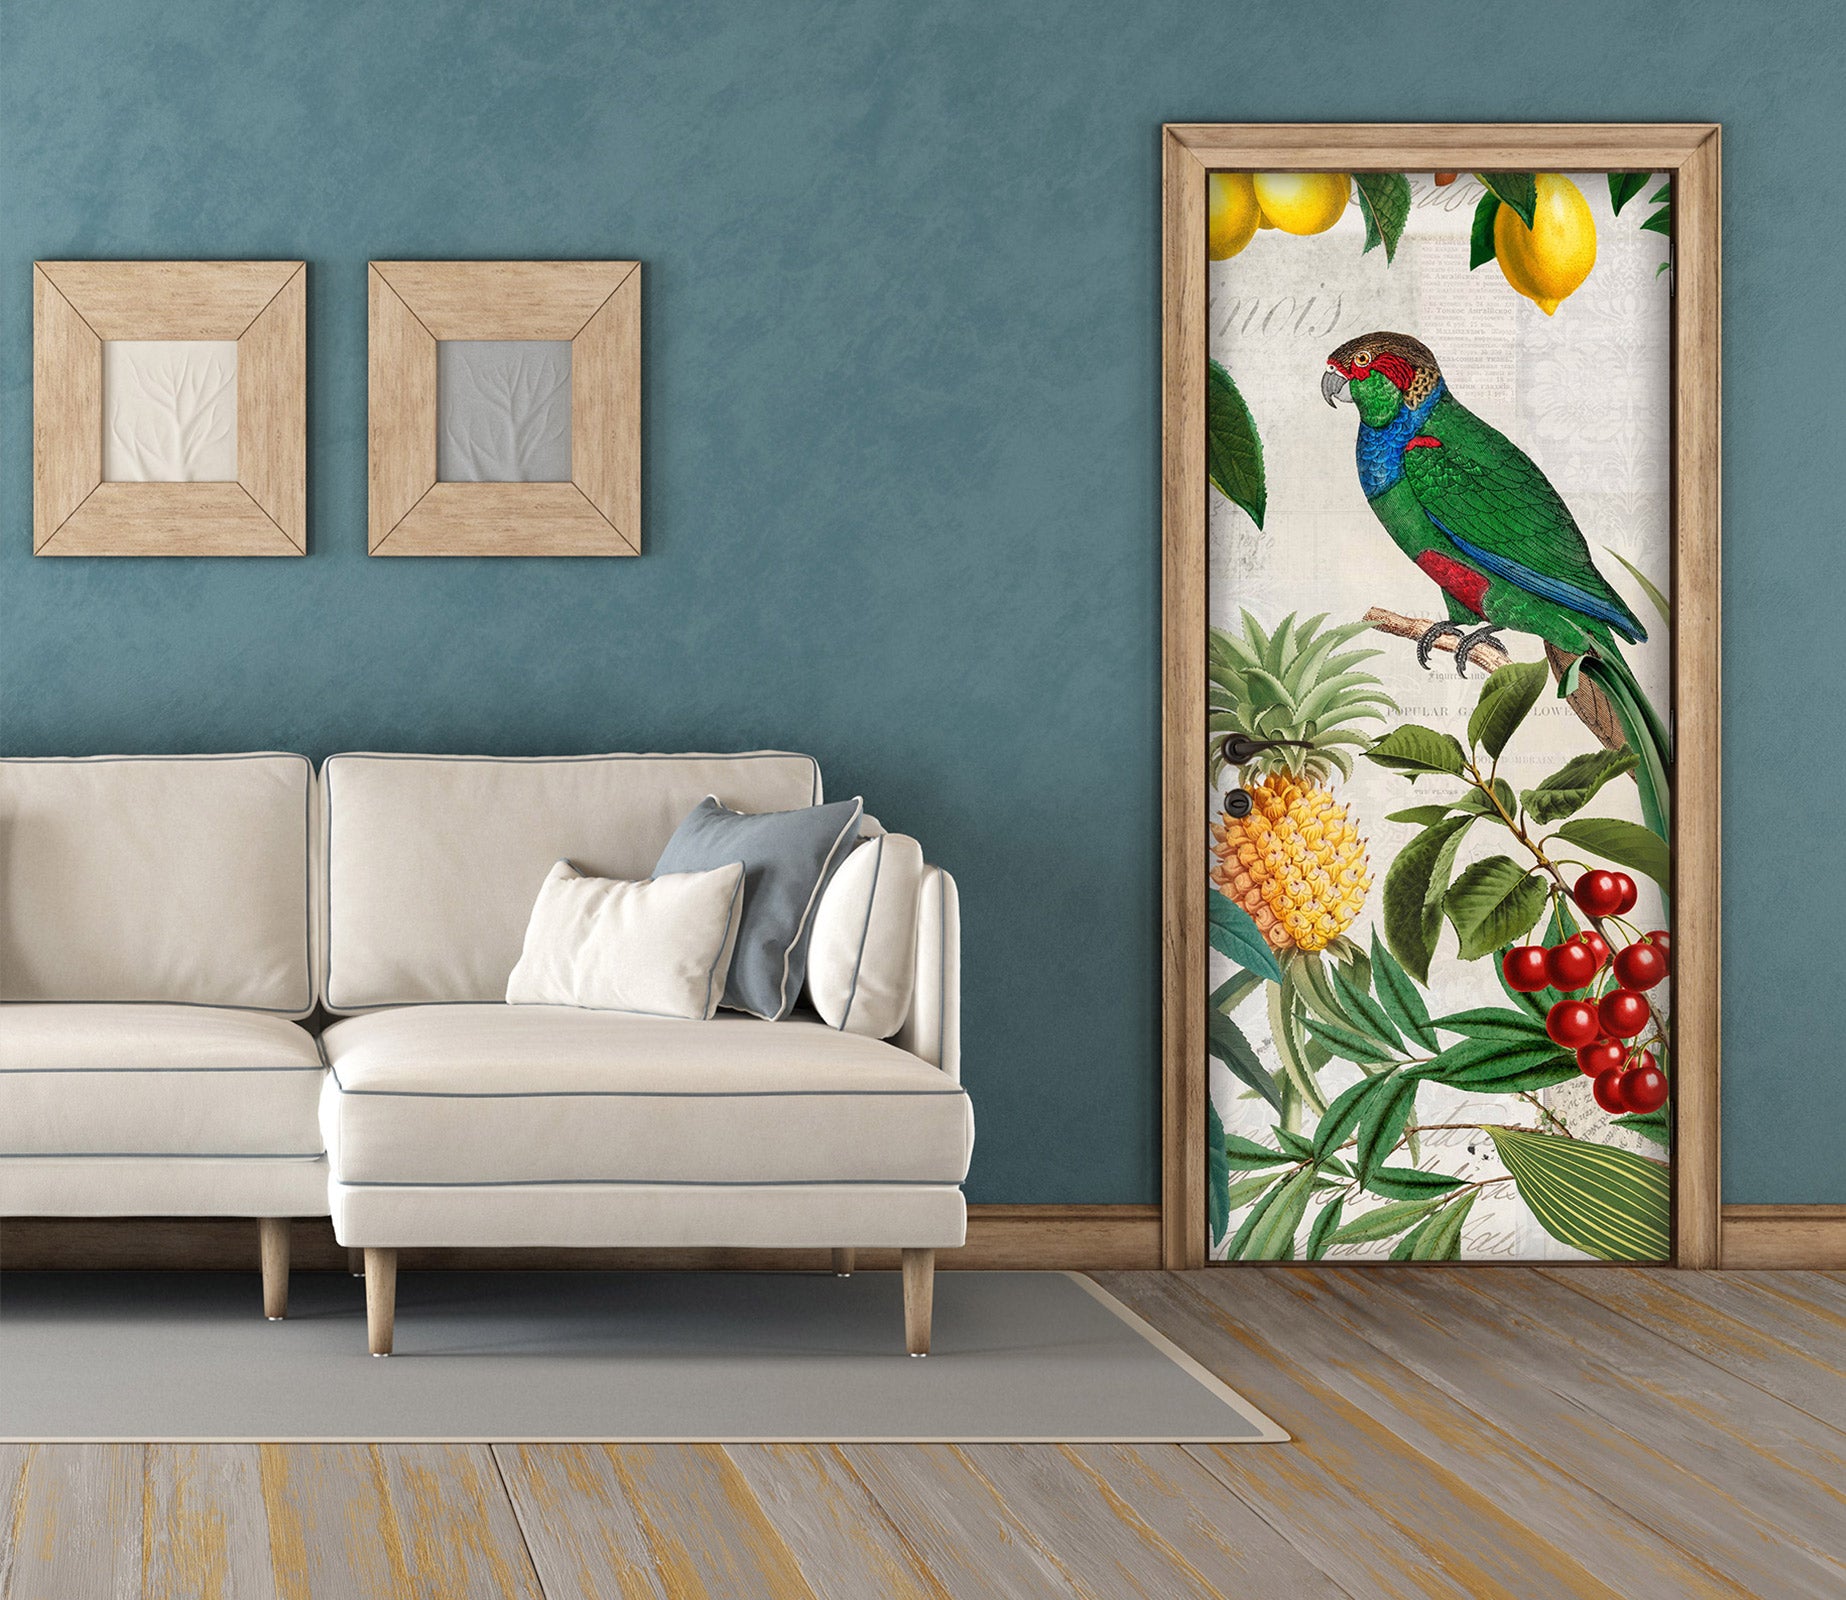 3D Pineapple Cherry Parrot 118132 Andrea Haase Door Mural